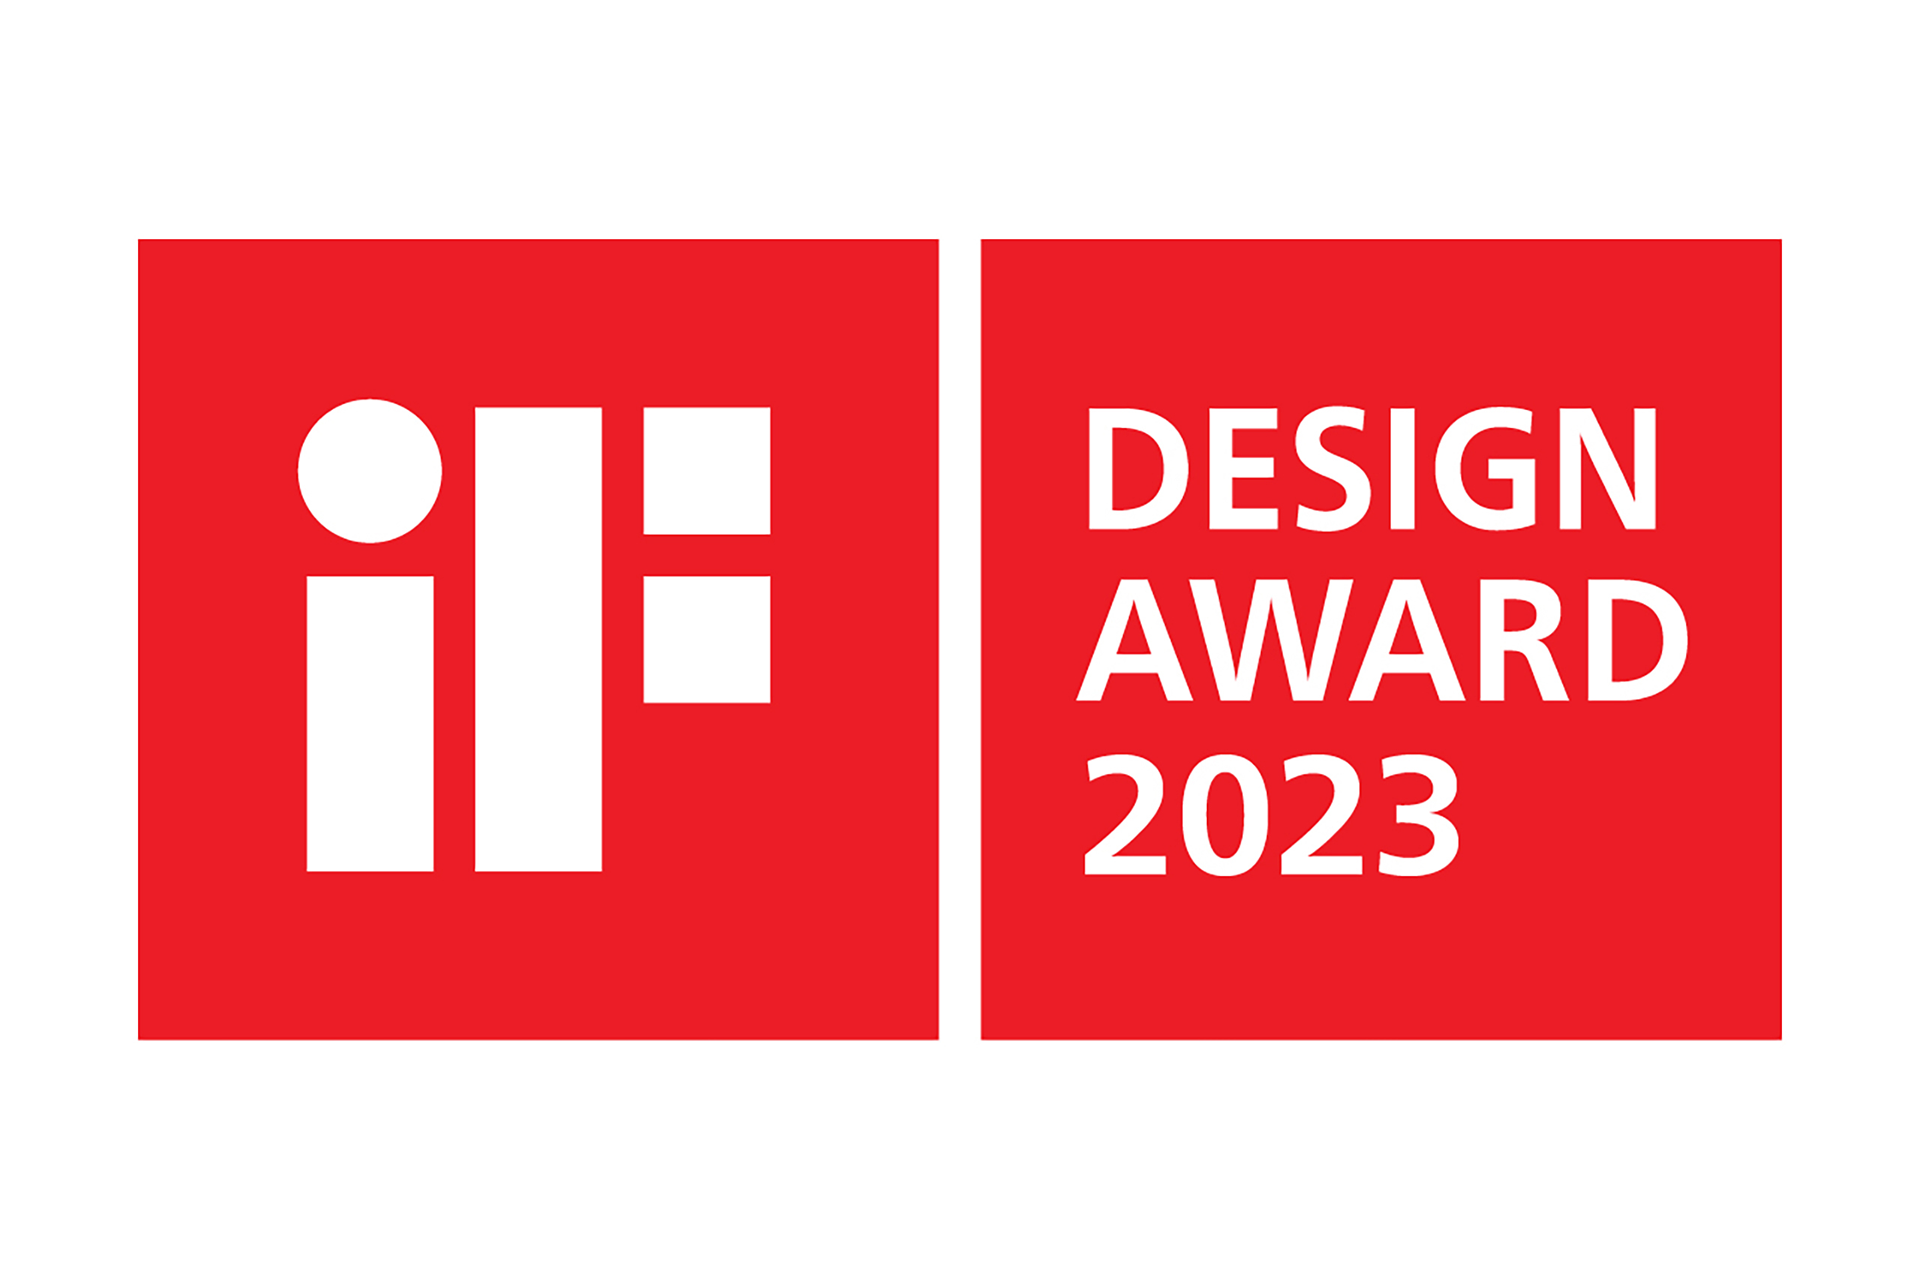 乃村工藝社が空間デザインを手掛けた 9プロジェクトが、 国際的なデザイン賞「iFデザインアワード」を受賞